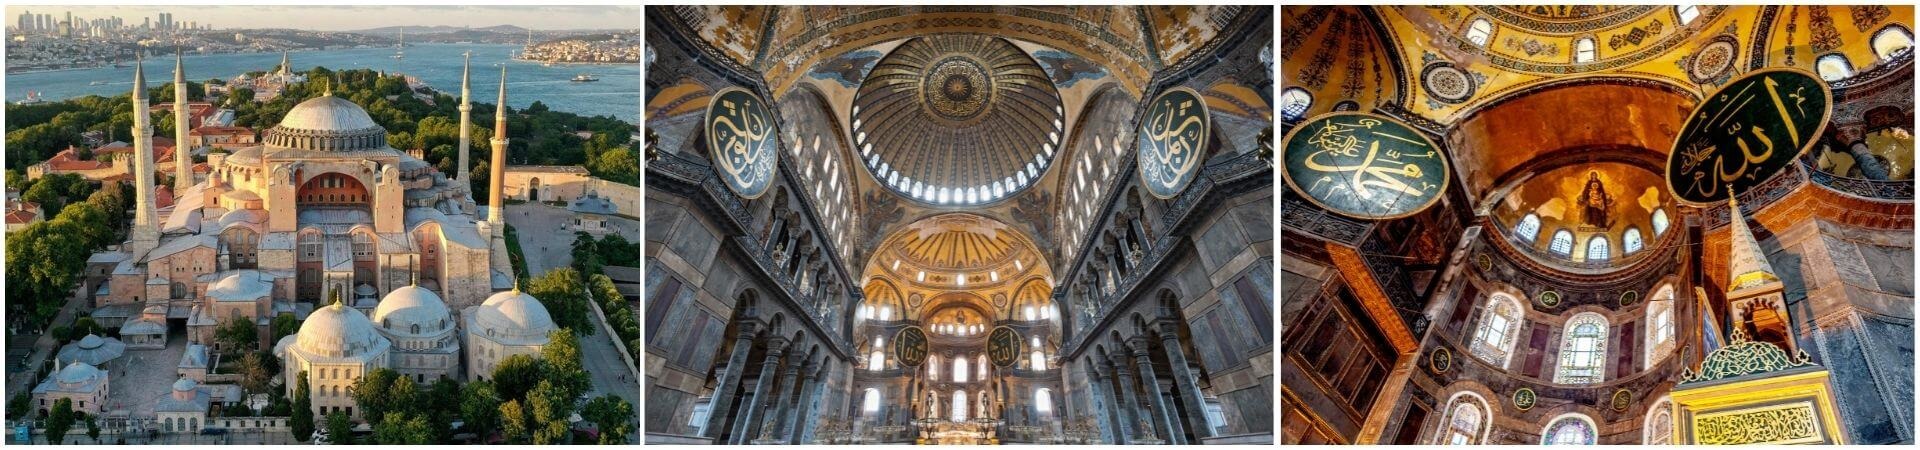 Visita guiada à Basílica de Santa Sofia